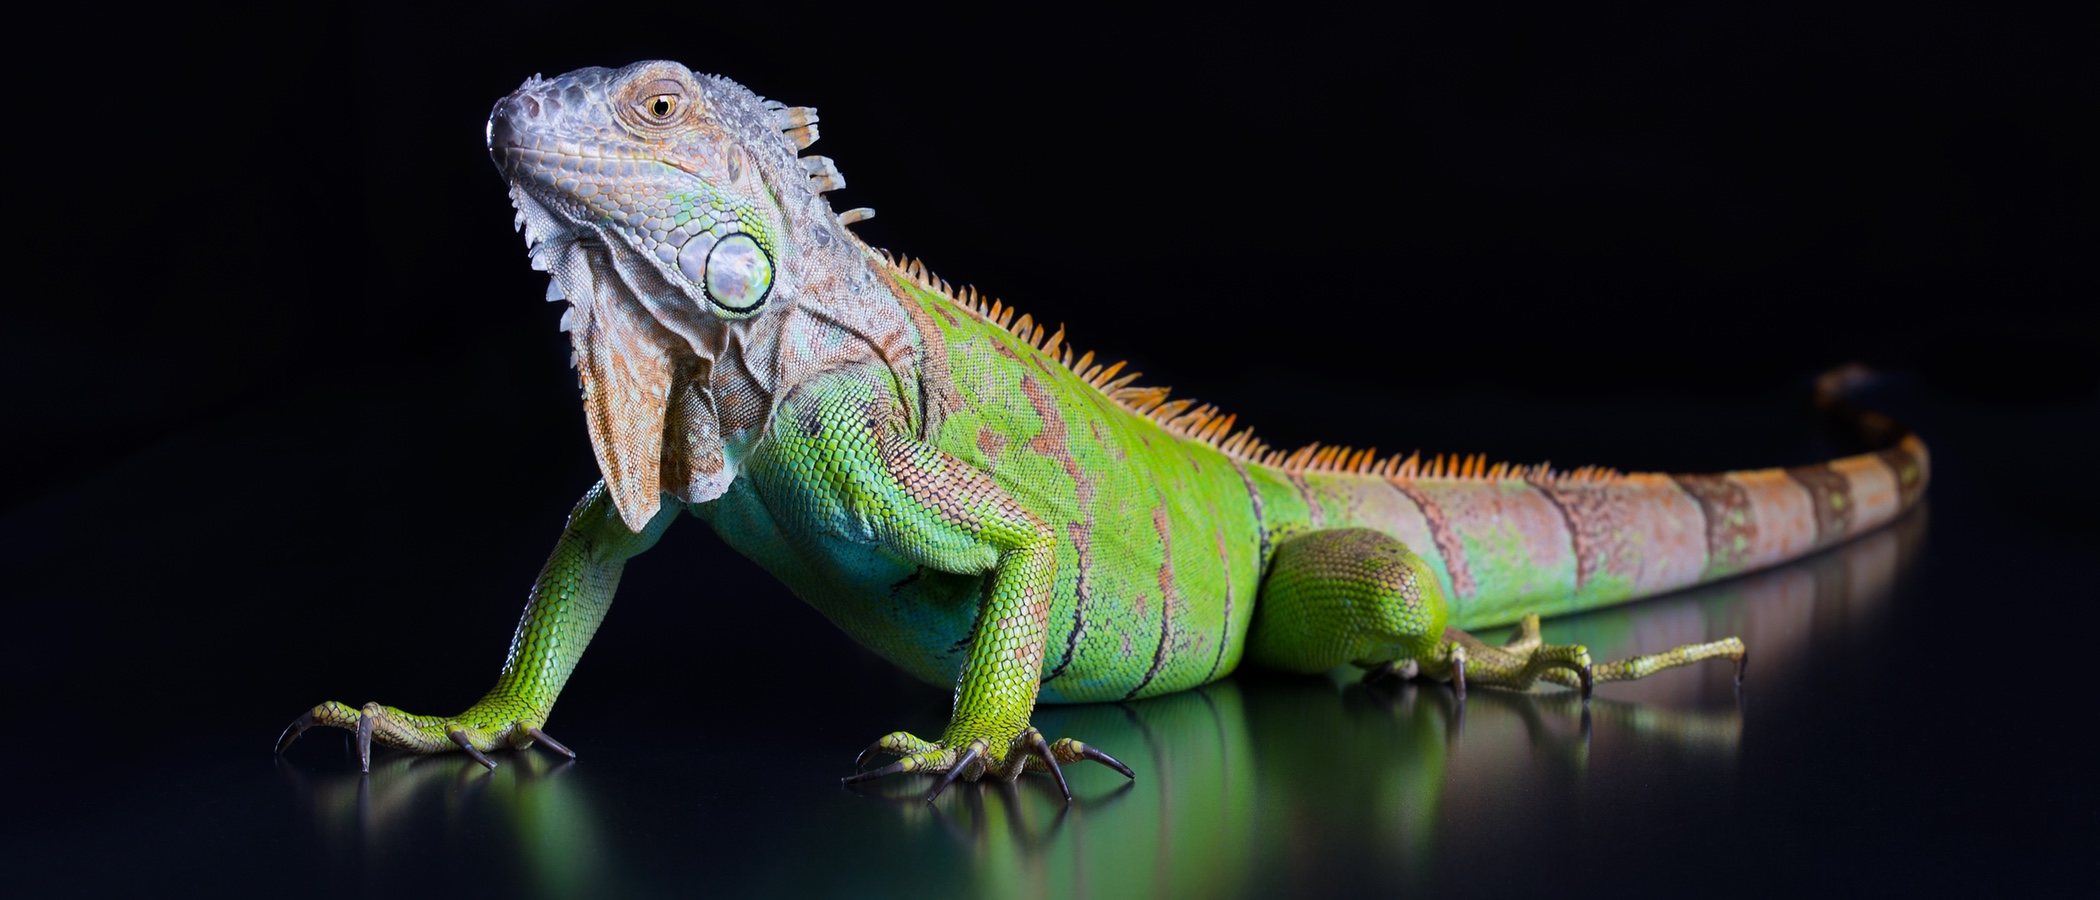 Hipotermia en reptiles: ¿qué debes hacer?